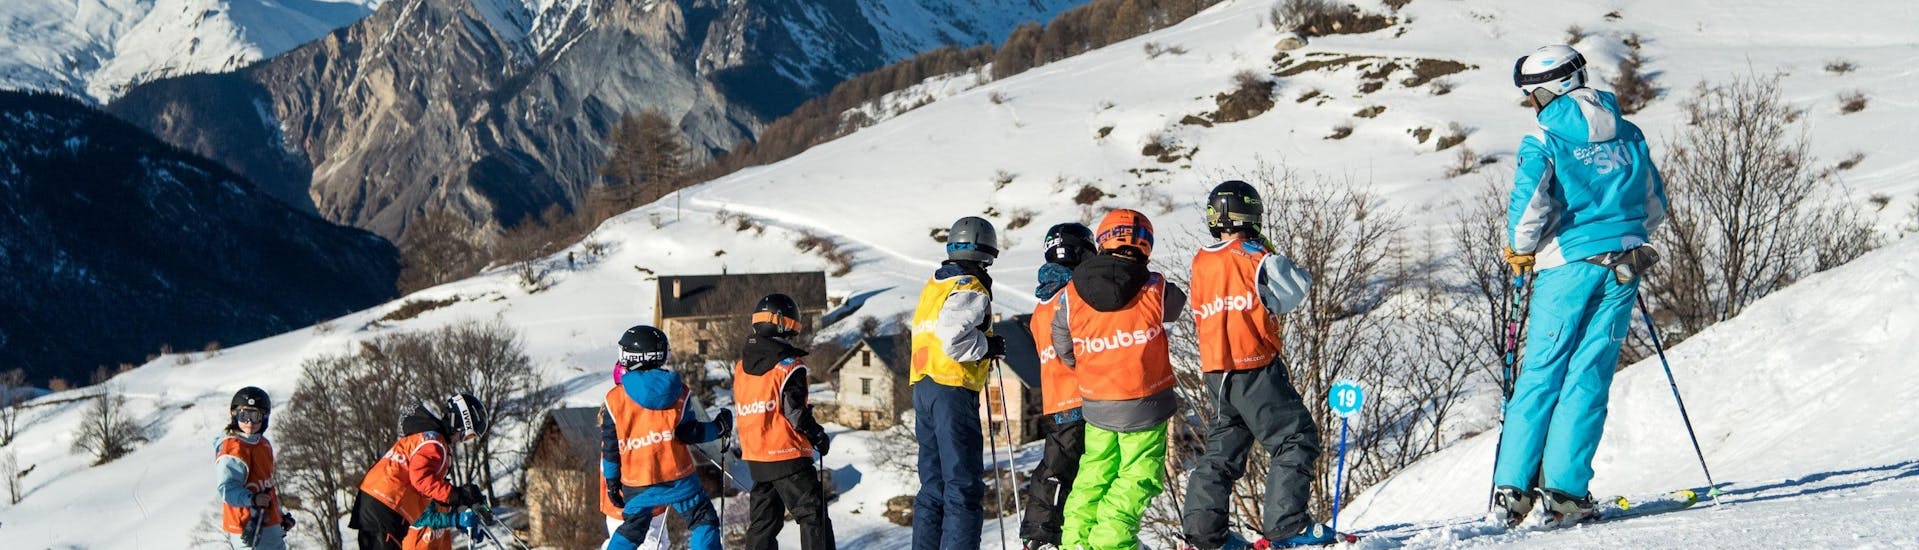 Lezioni di sci per bambini a partire da 8 anni per principianti.